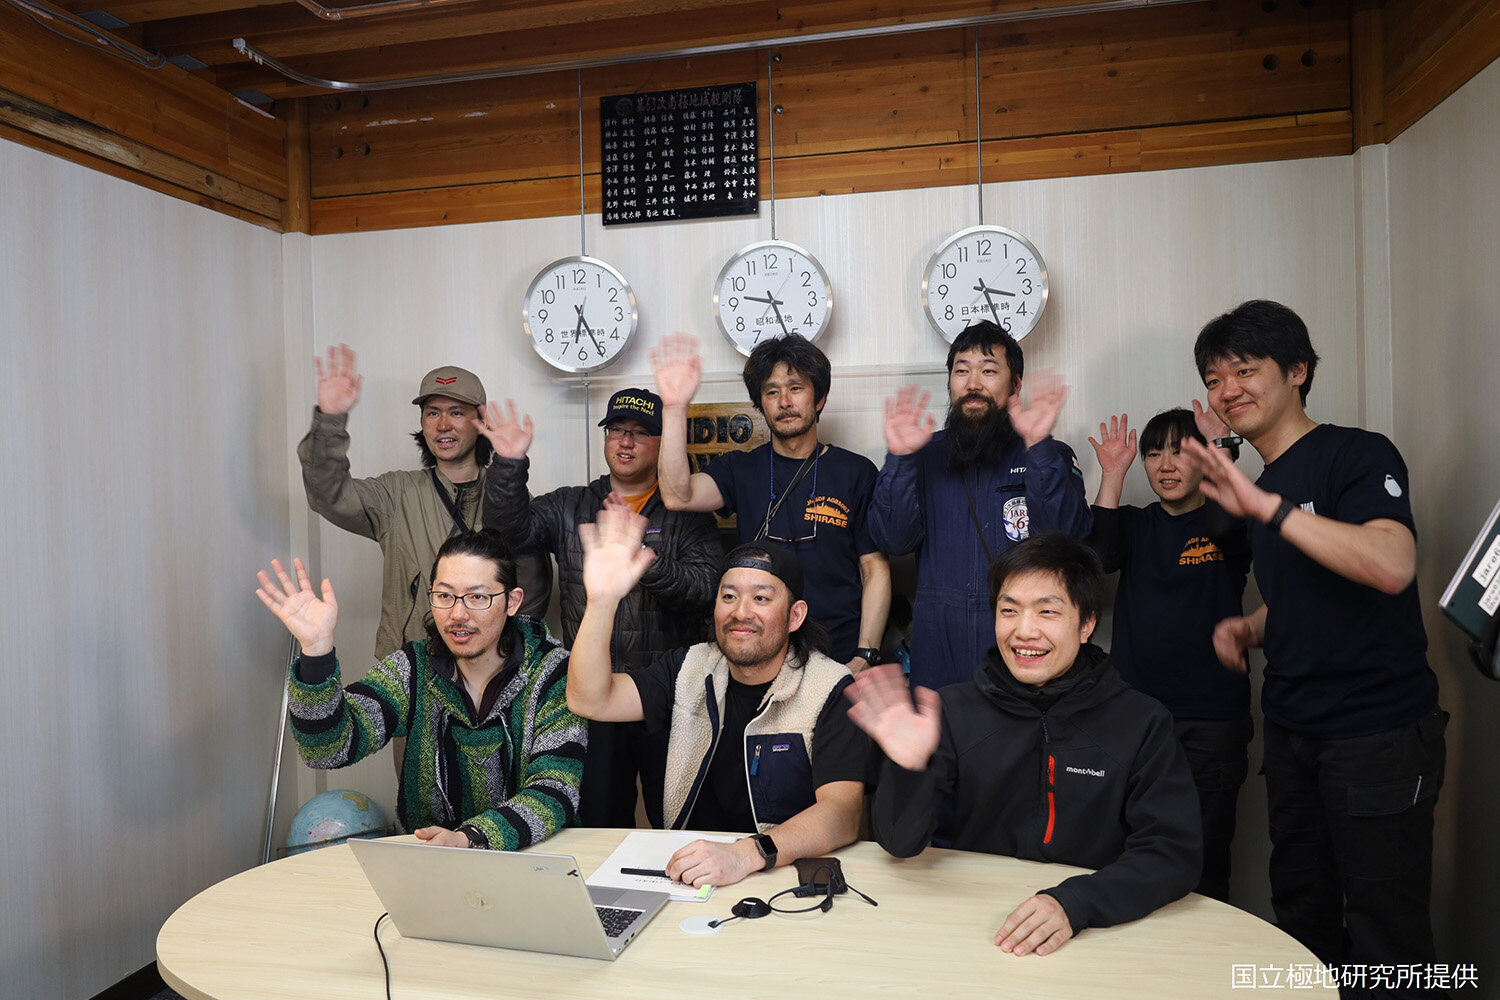 日本の小学校とオンライン会議をつなぎ、南極の気温や観測隊の仕事についてリアルタイムで映像を届ける「南極教室」を開催。みんな楽しそうに聞いてくれて安心しました